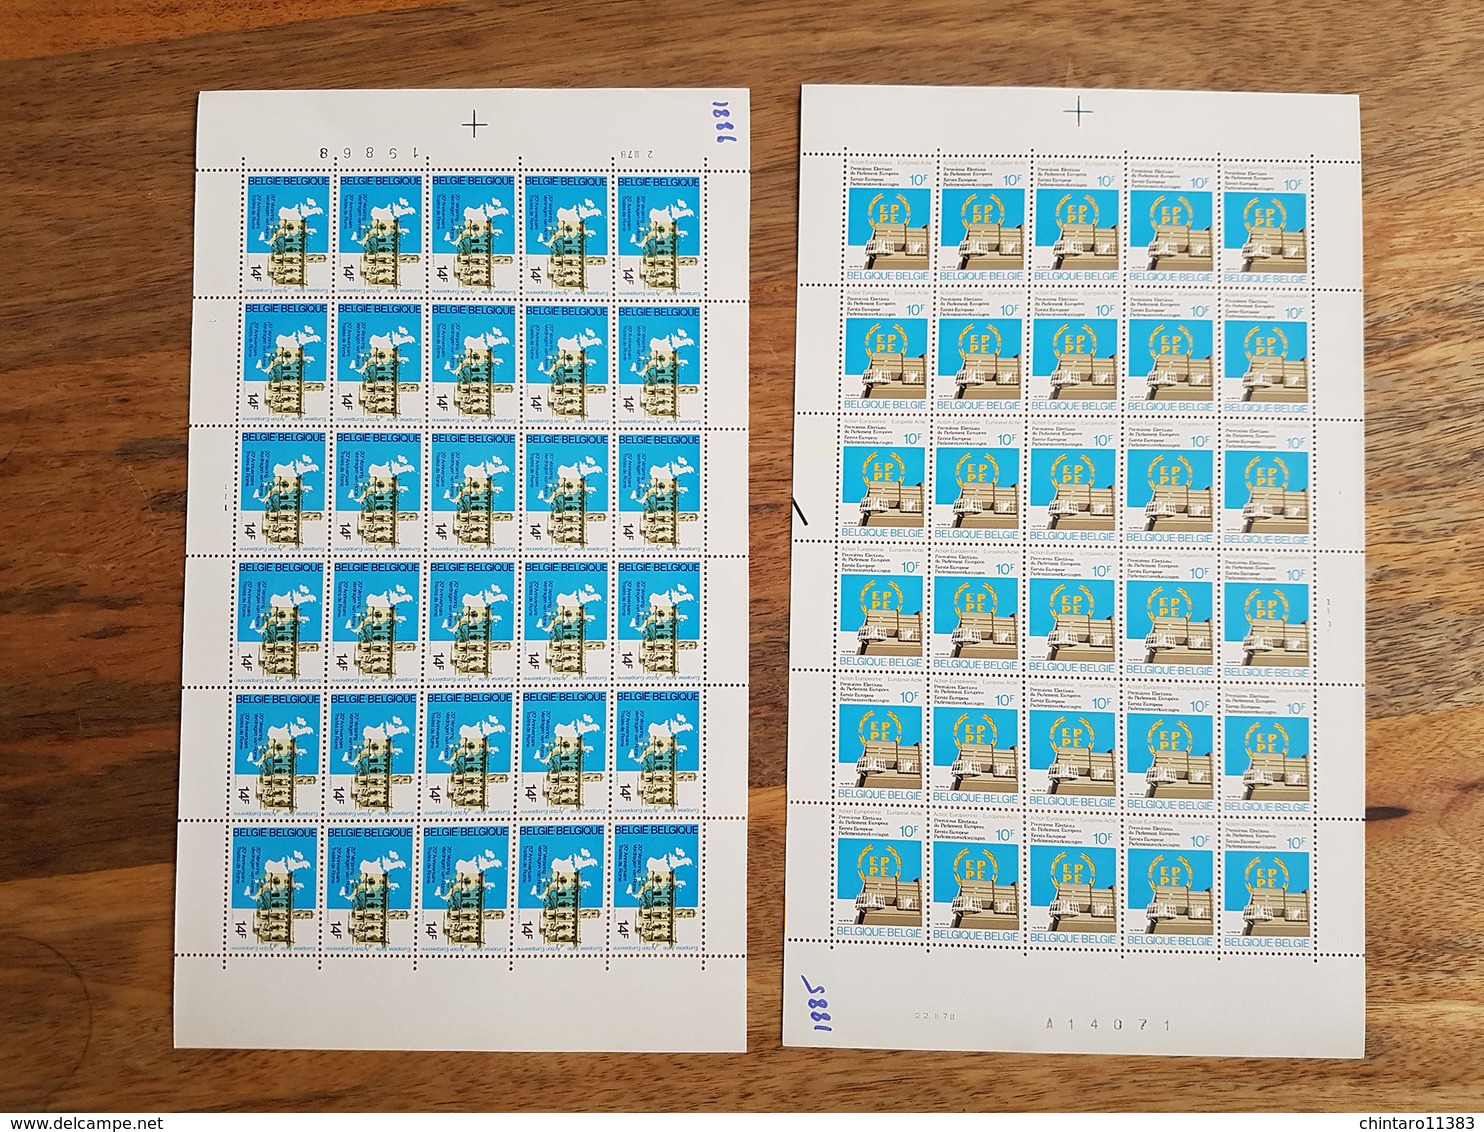 Lot feuilles complètes de timbres Belgique - Année 1978